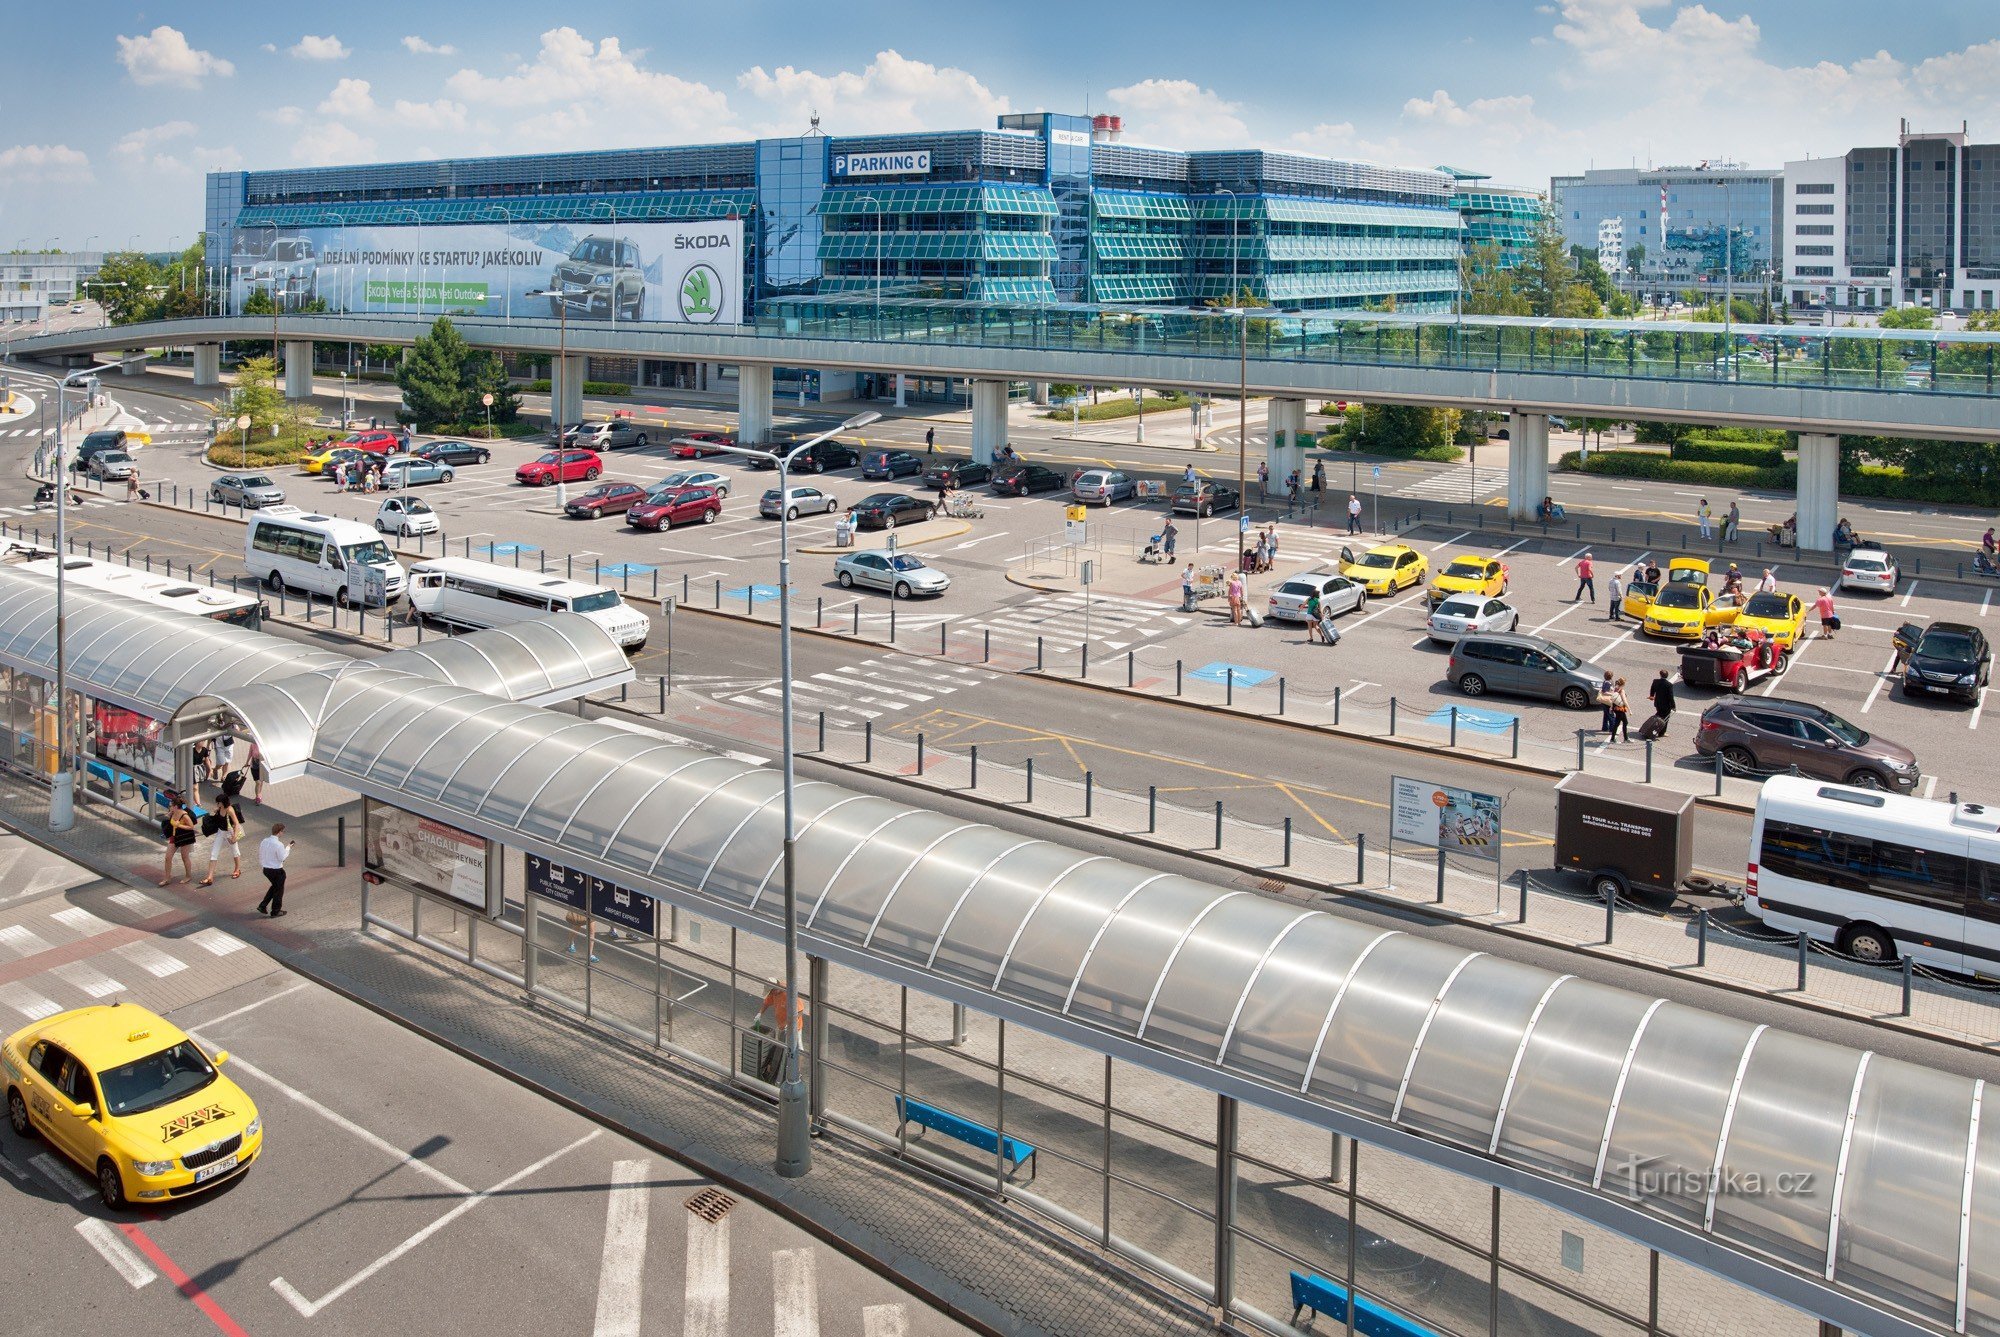 布拉格机场正在改变以容纳乘客，它降低了茶点和停车费的价格